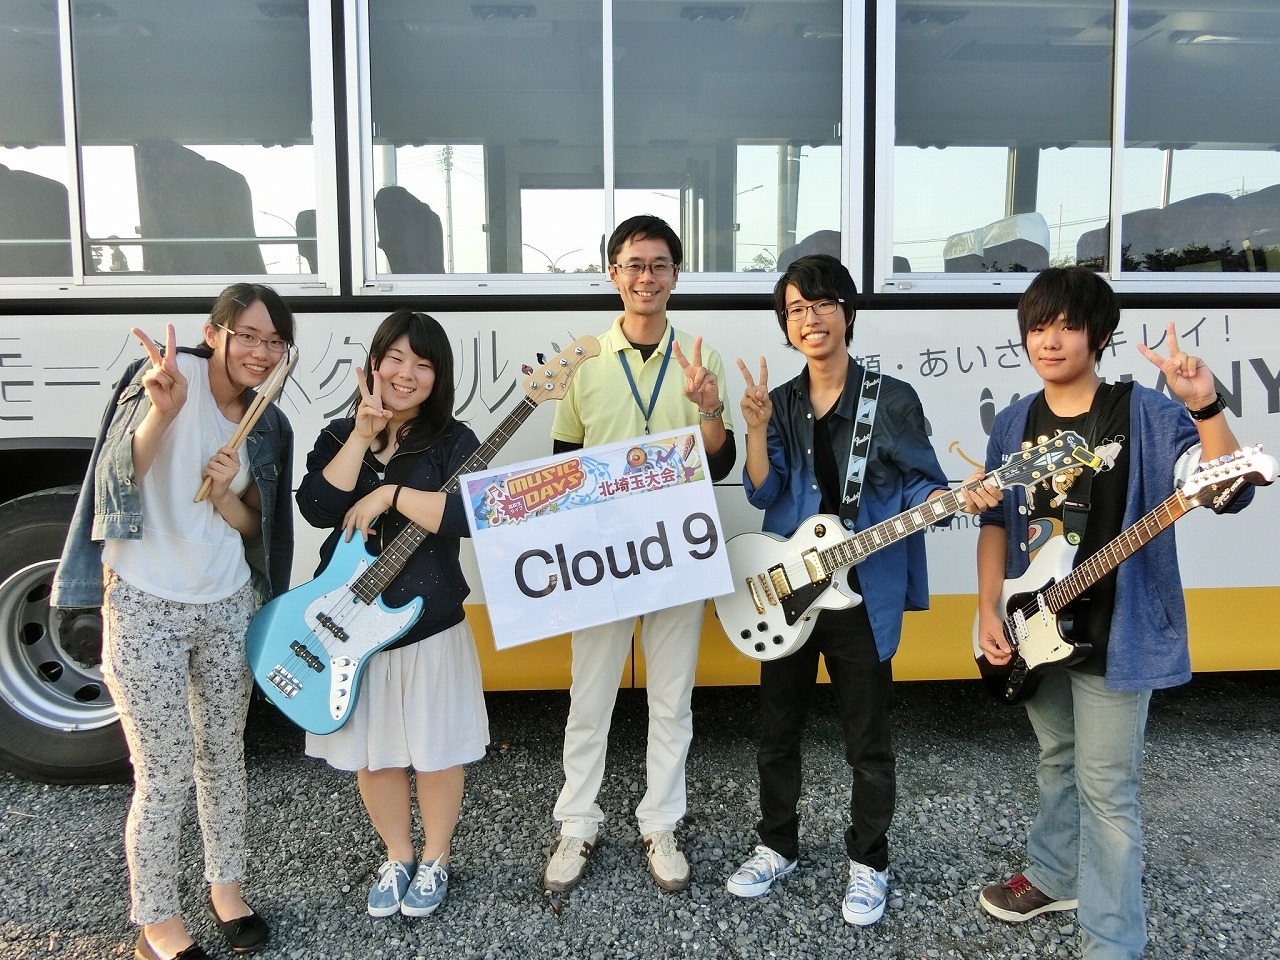 22 Cloud 9